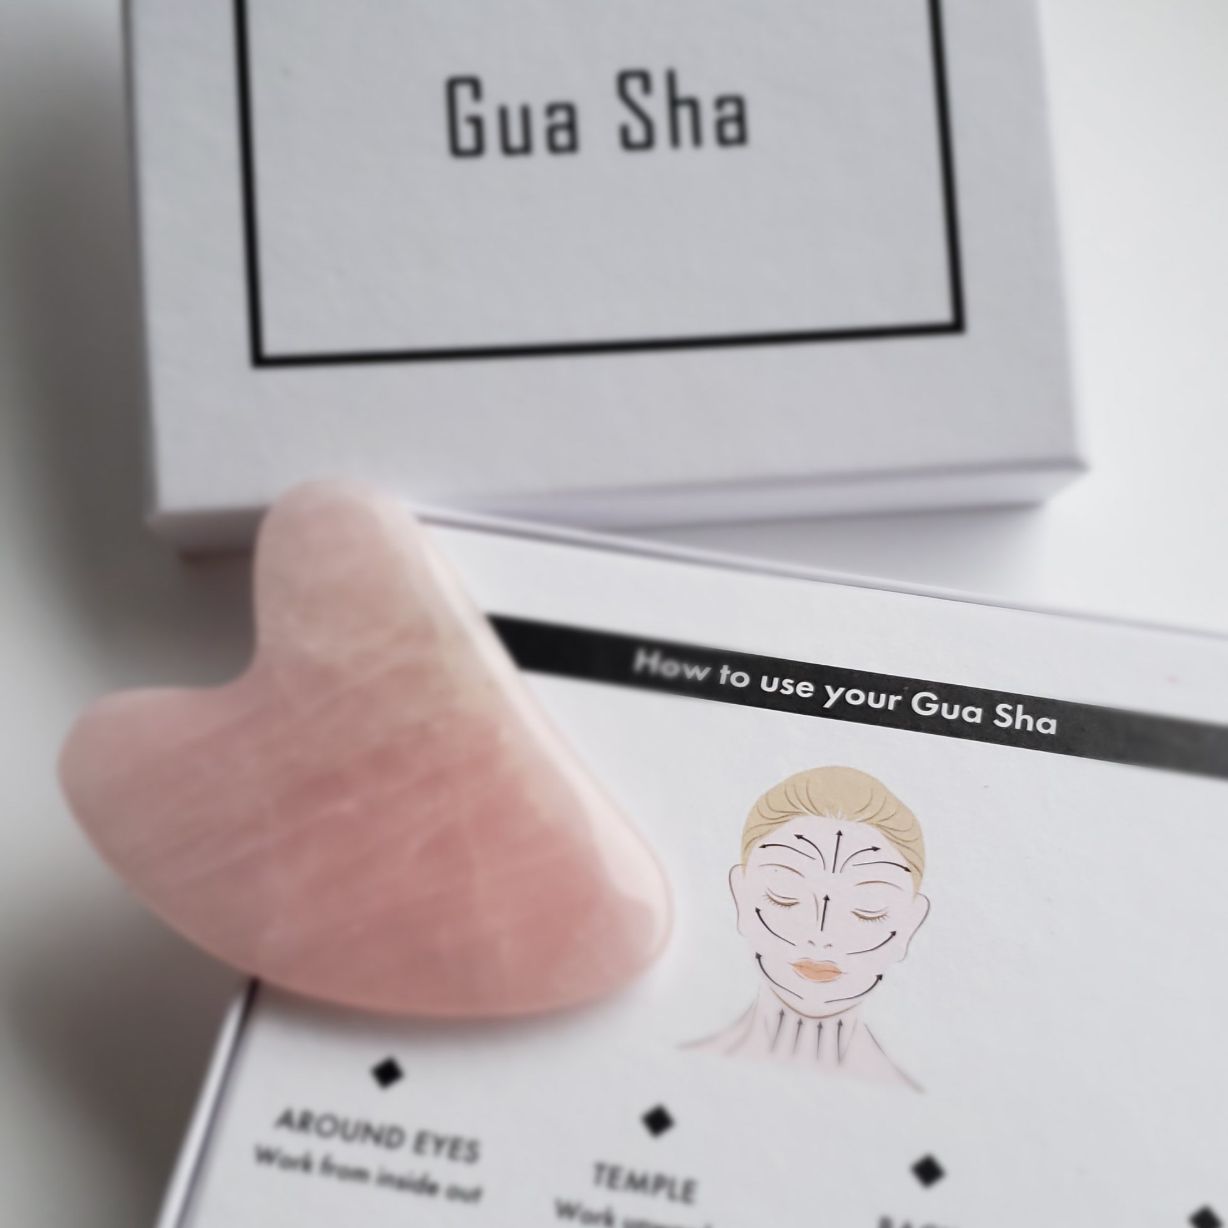 Rose Quartz Gua Sha Facial Massage Tool